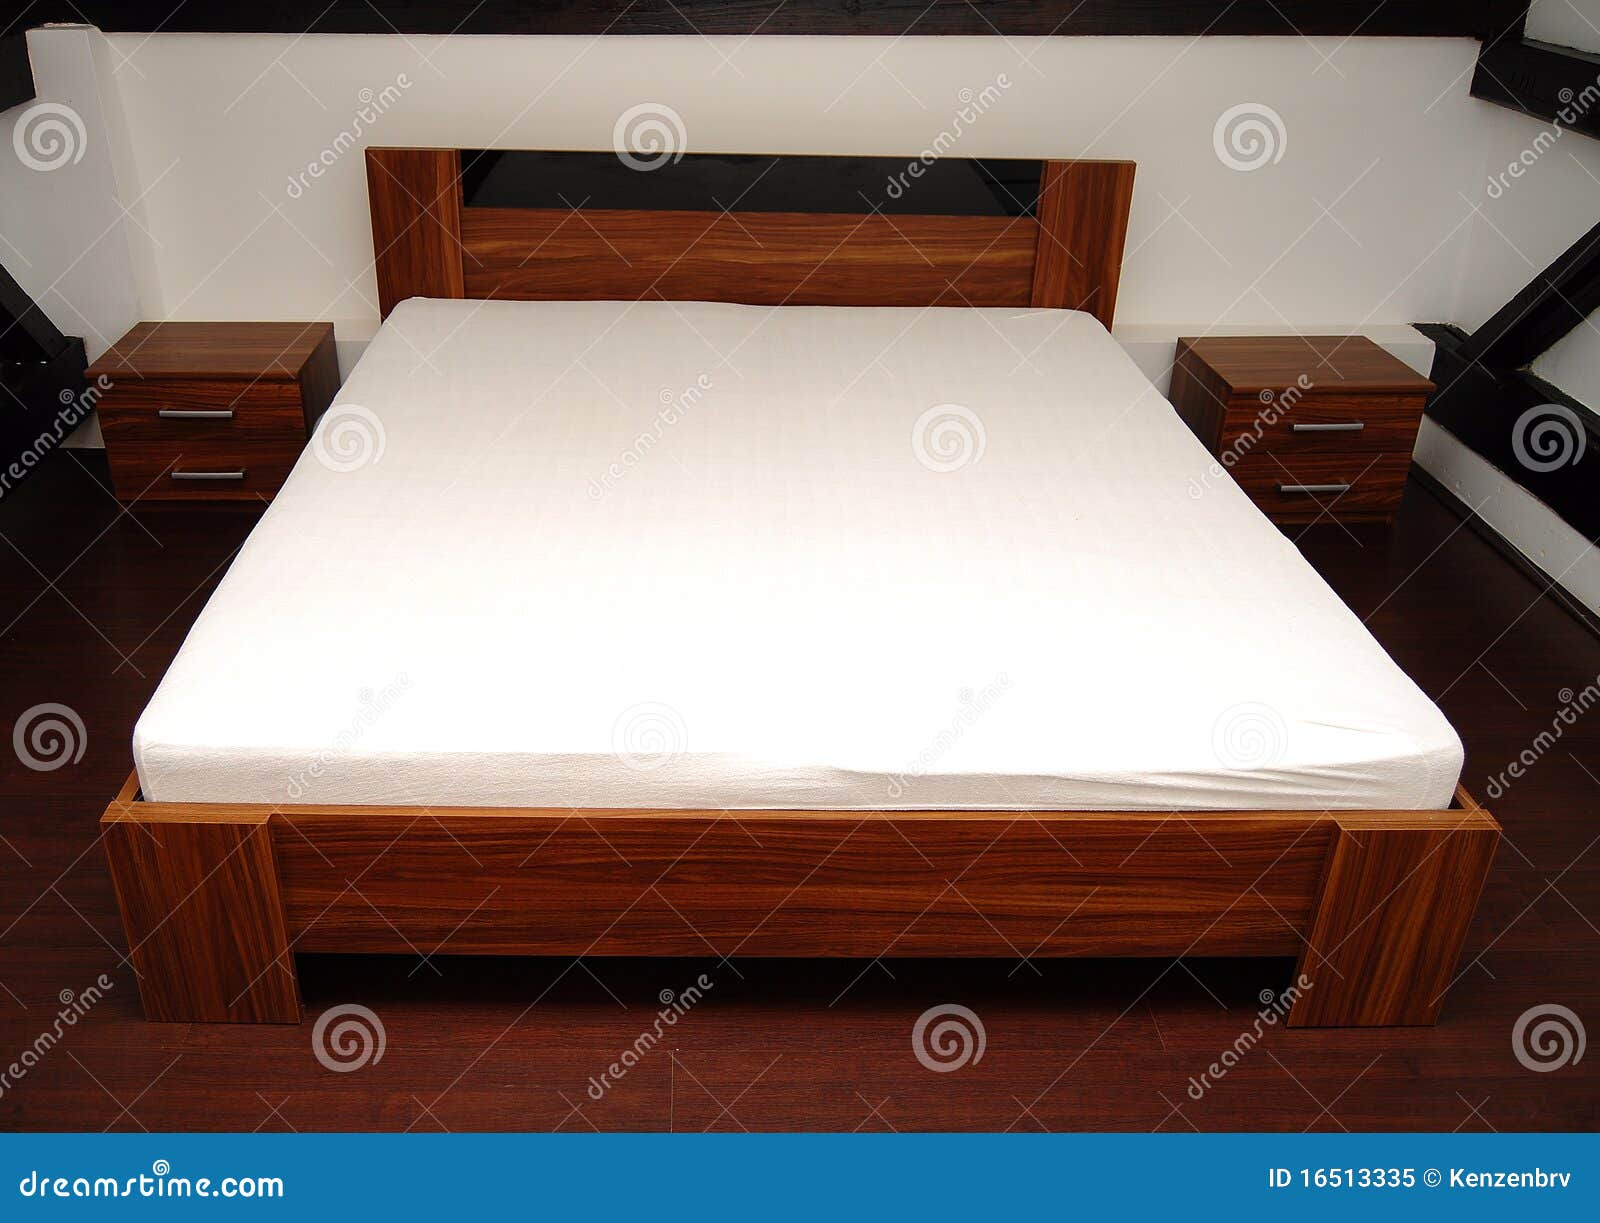 Chambre à coucher en bois image stock. Image du intérieur - 16513335